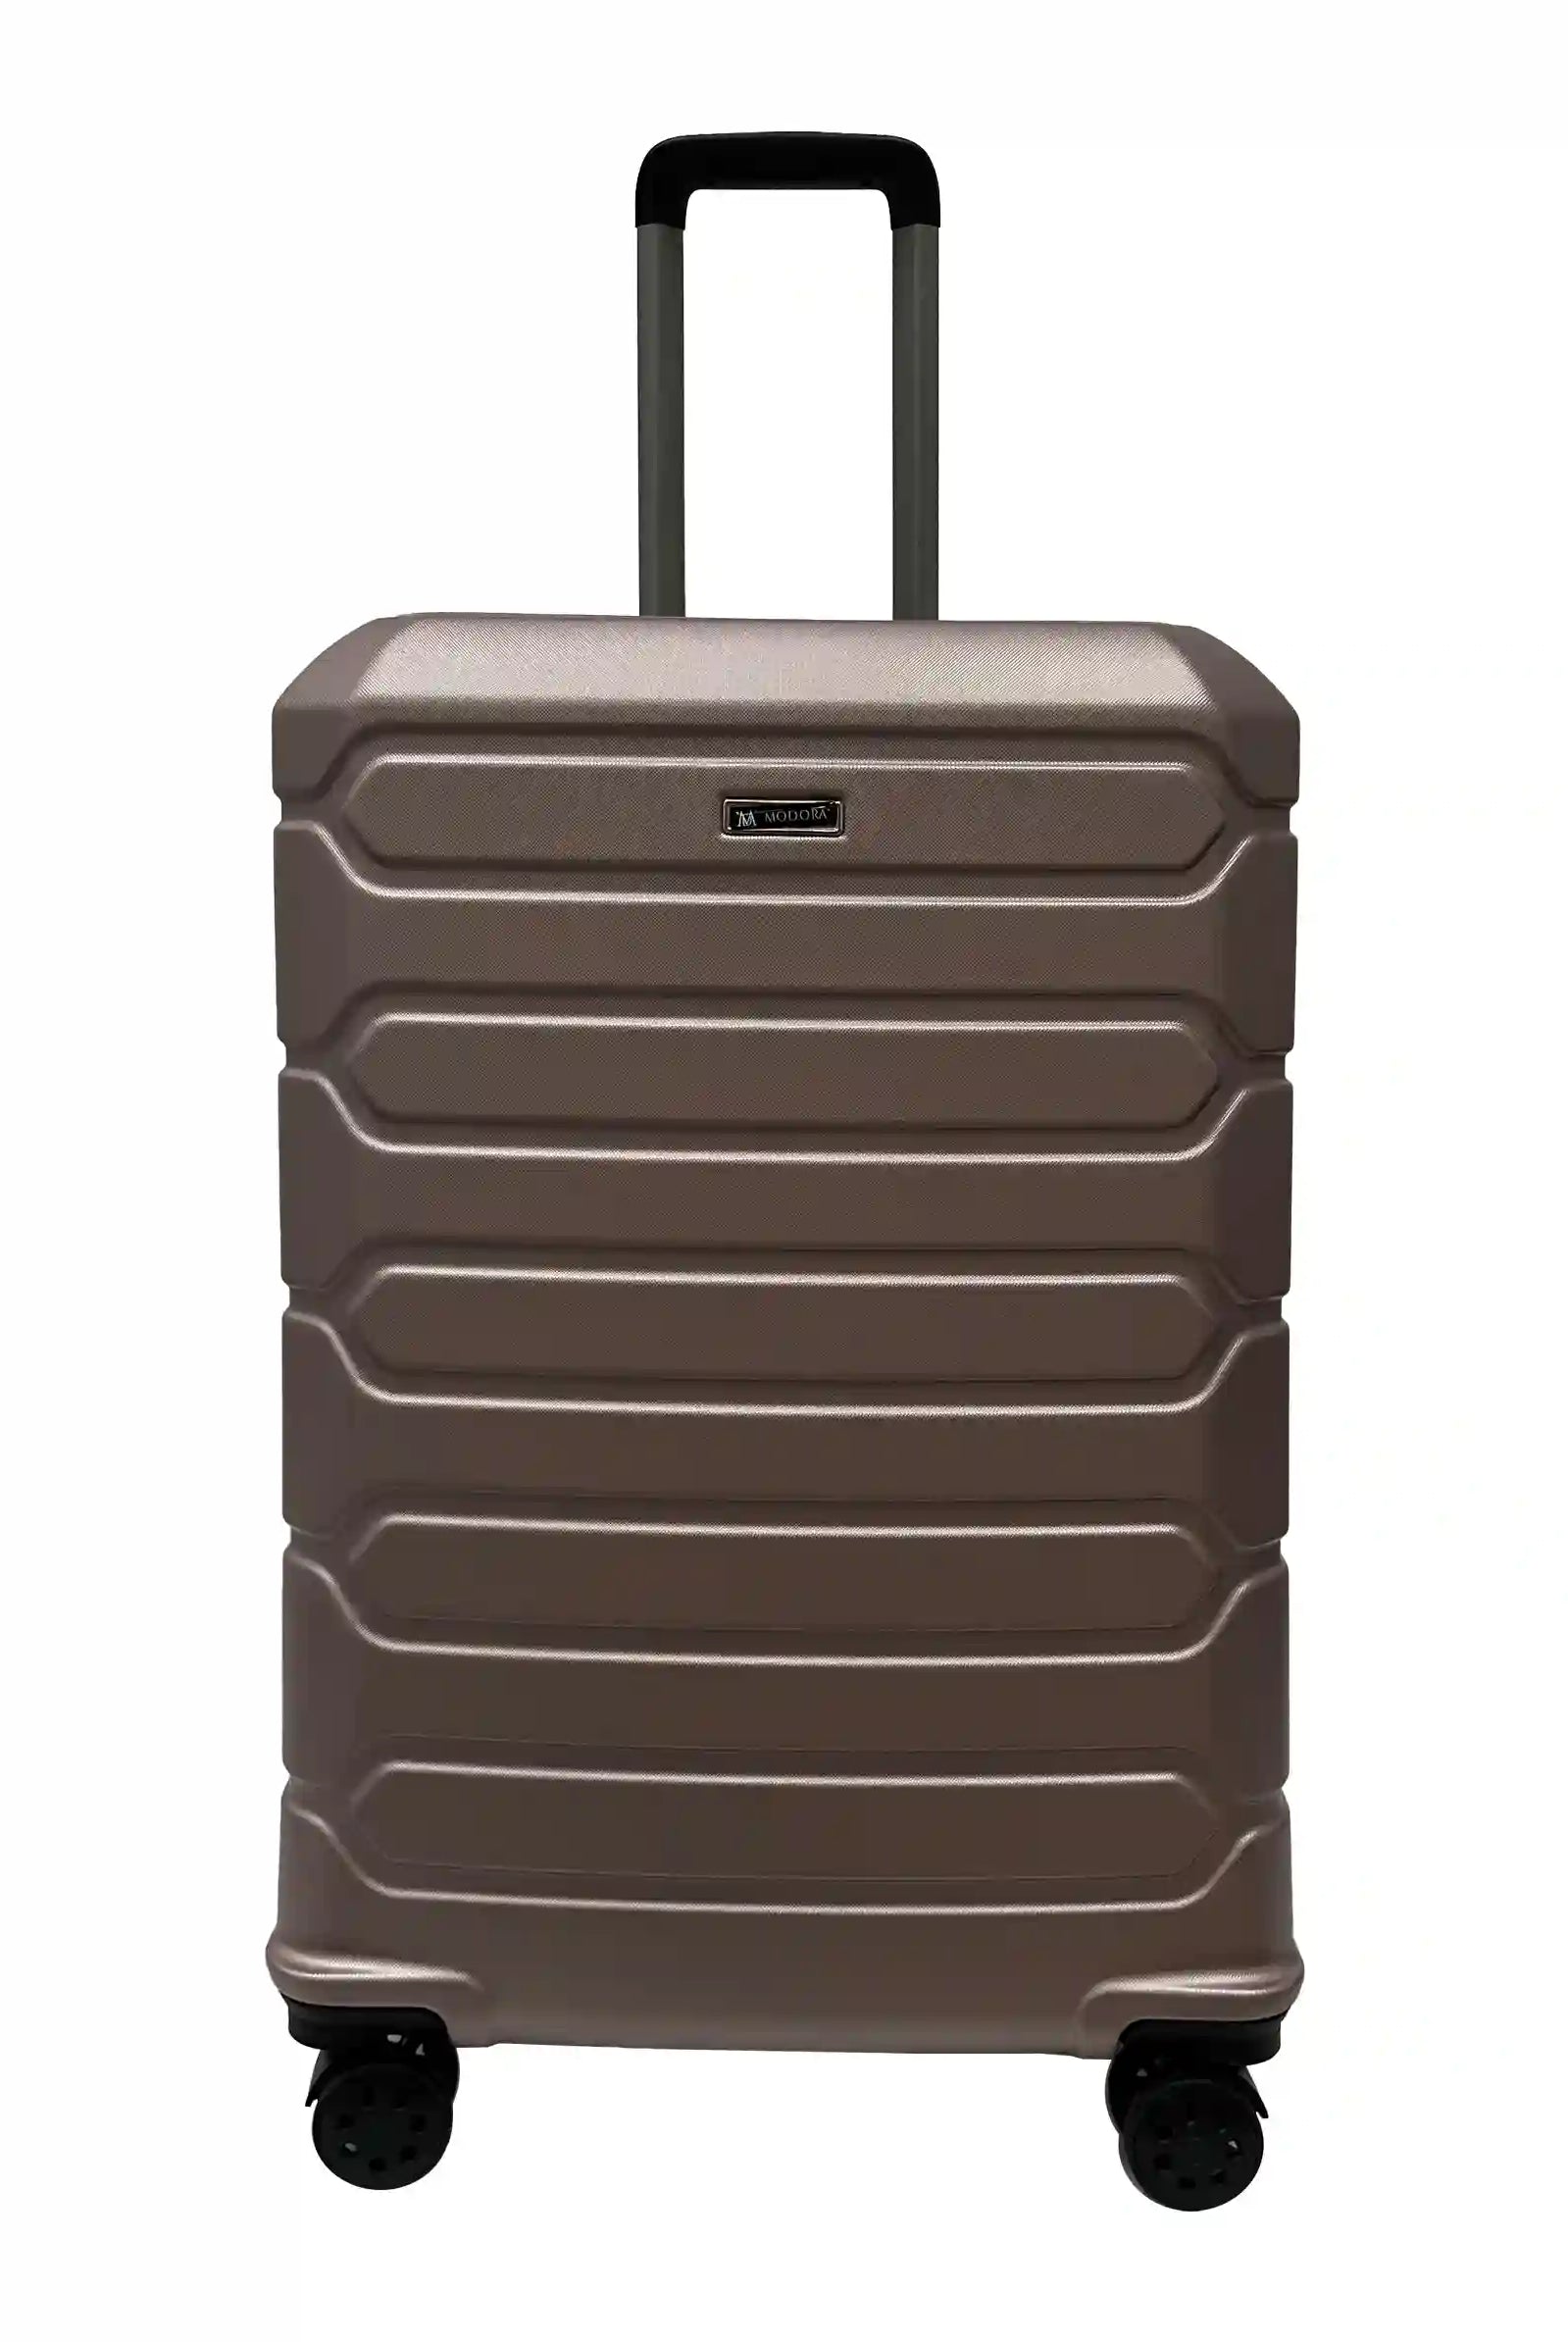 Large 4 wheel suitcase